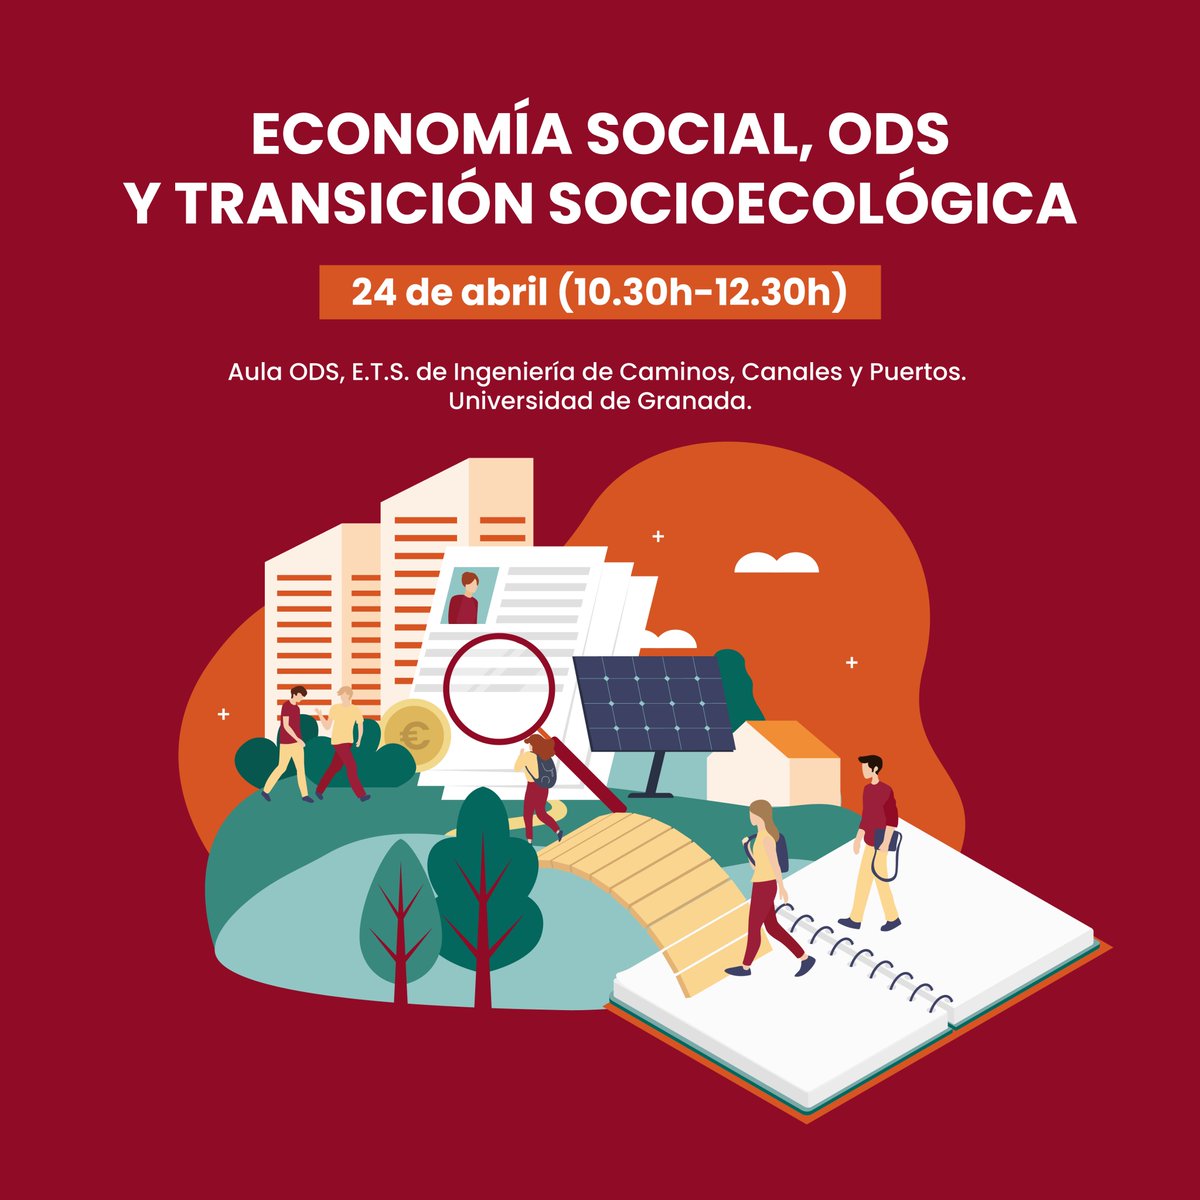 Nos vemos en la📢 Jornada 'Economía Social, ODS y Transición Socioecológica' Colaboran: @CanalUGR y @TallerEcosocial 🗓️24 abril 🕥10:30 -12:30 Aula ODS Universidad de Granada ▶Actividad en el marco del proyecto: 'Economía Social, Universidades y ODS #DGES @EmpleoJunta